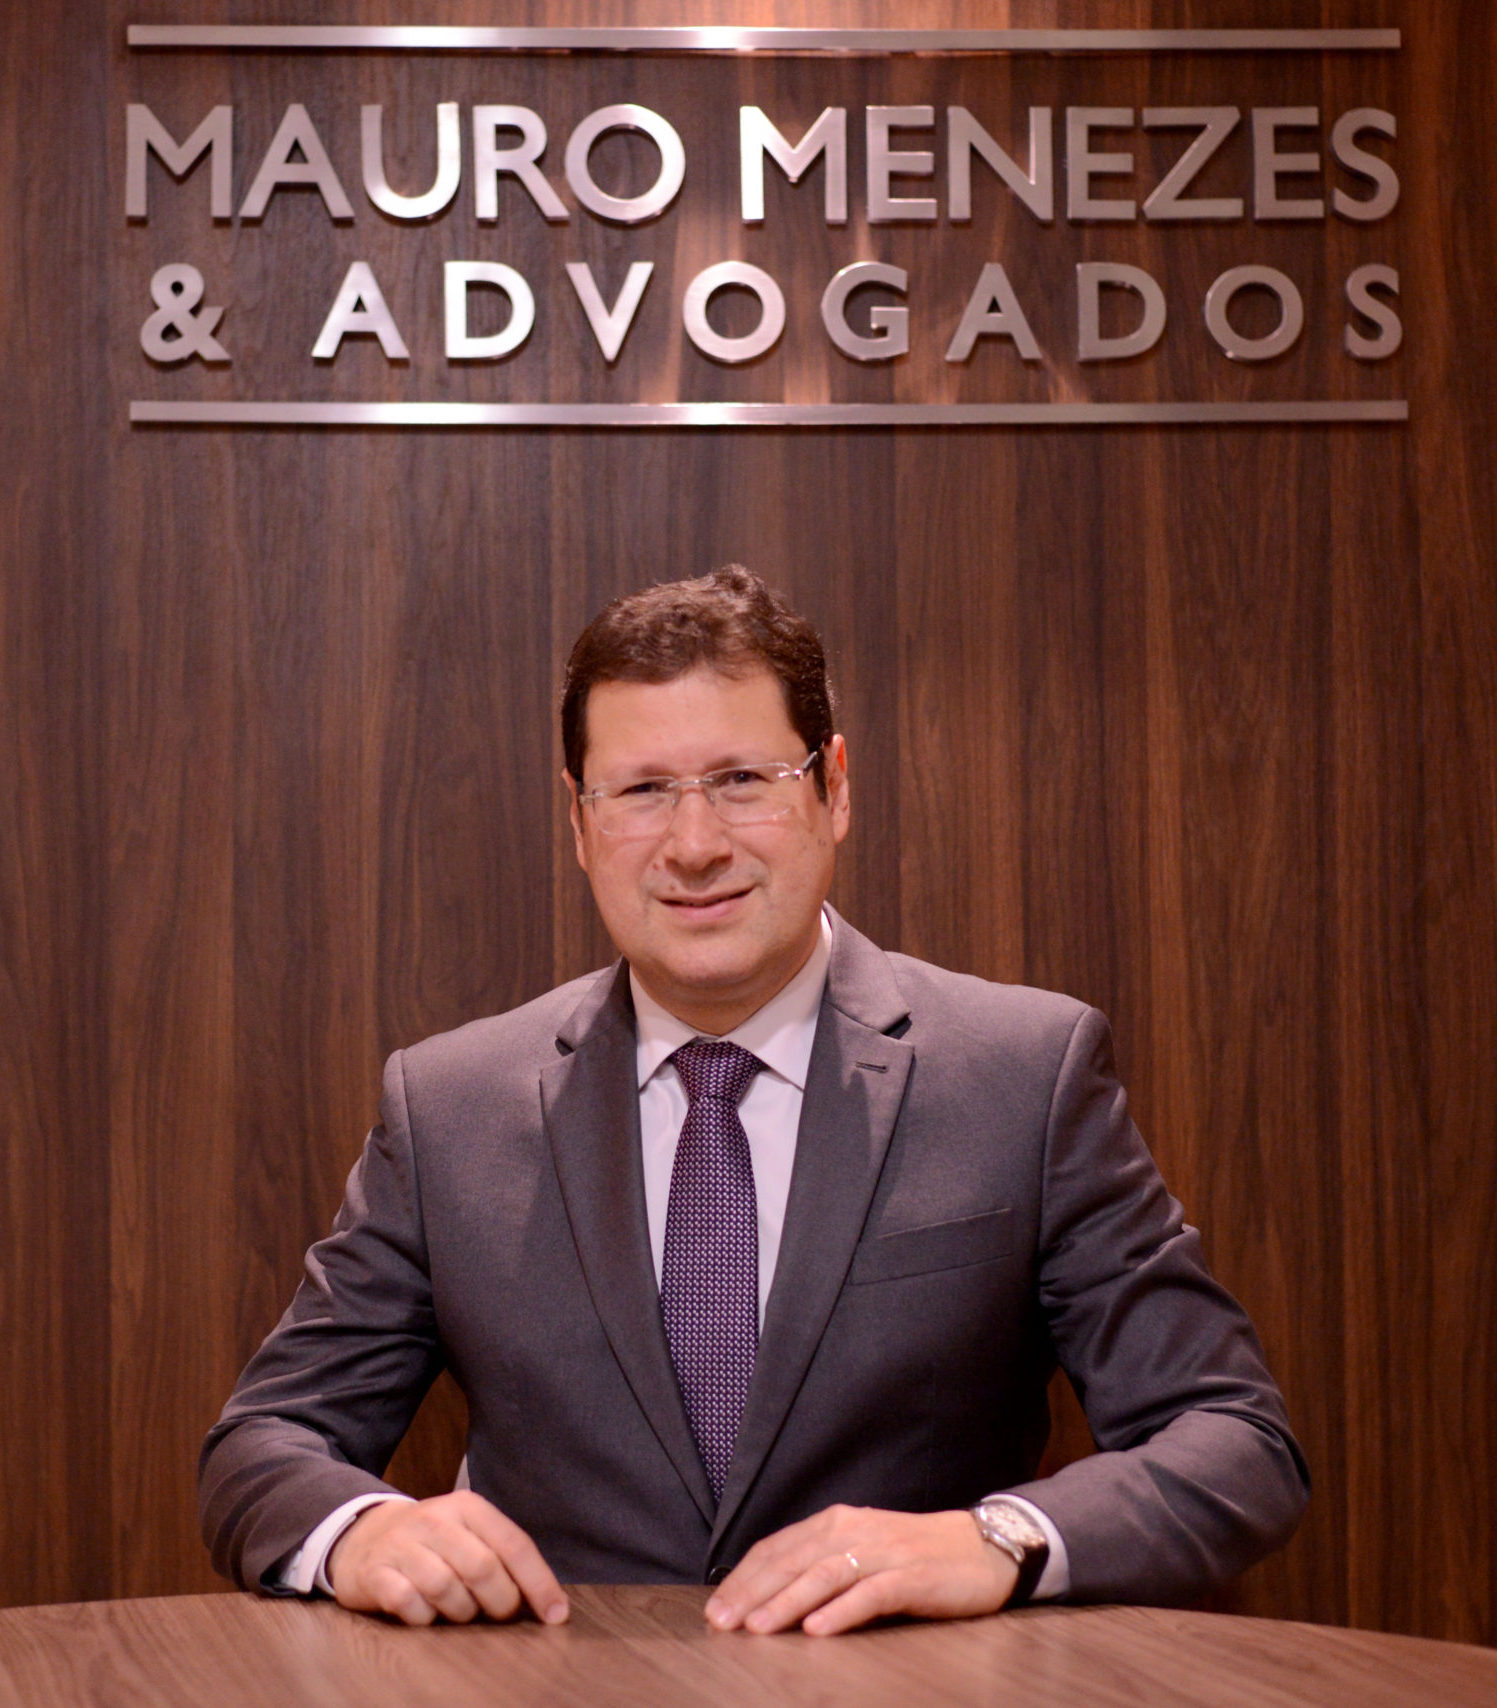 Mauro de Azevedo Menezes